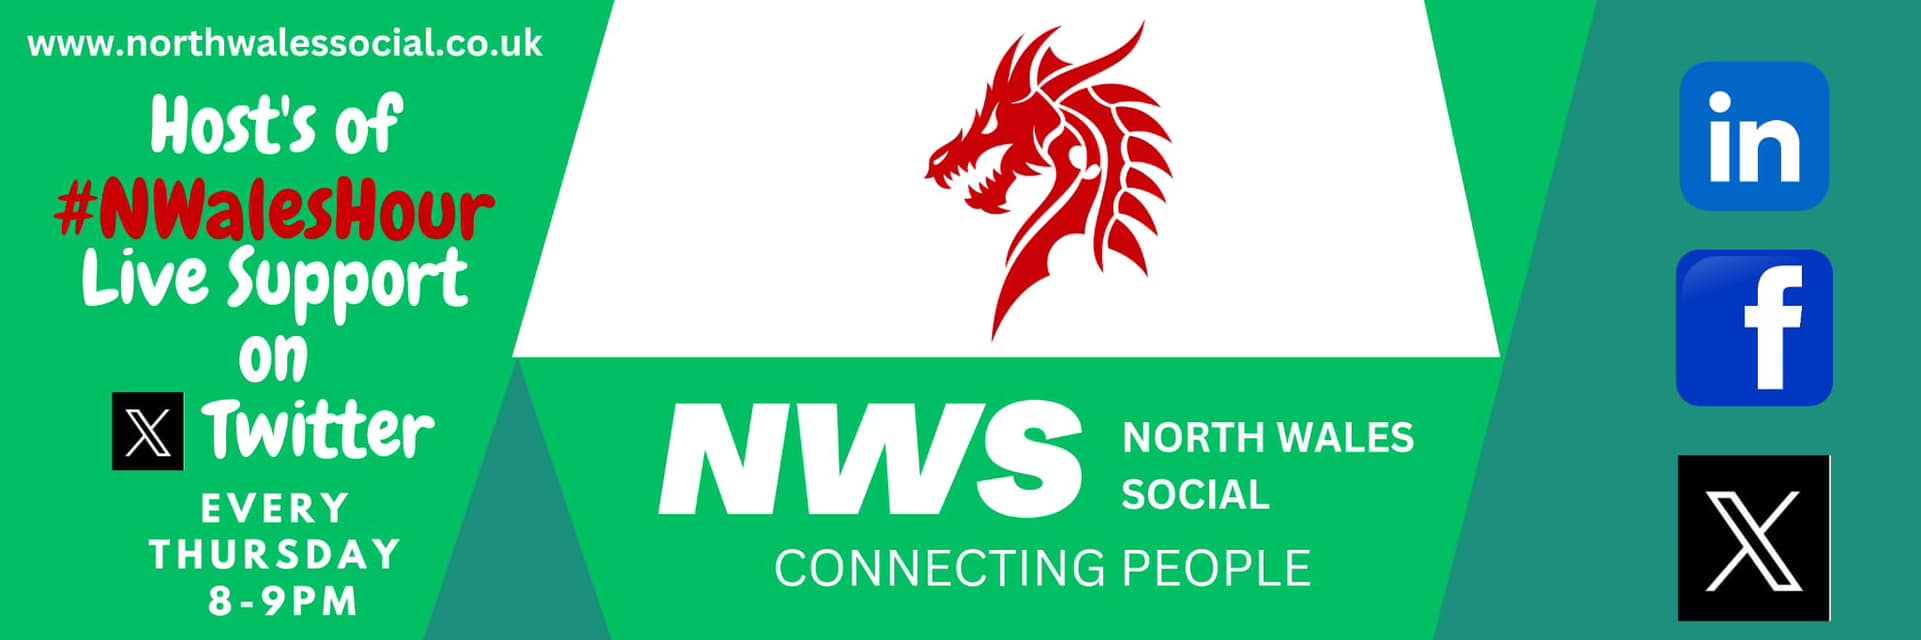 North Wales Social